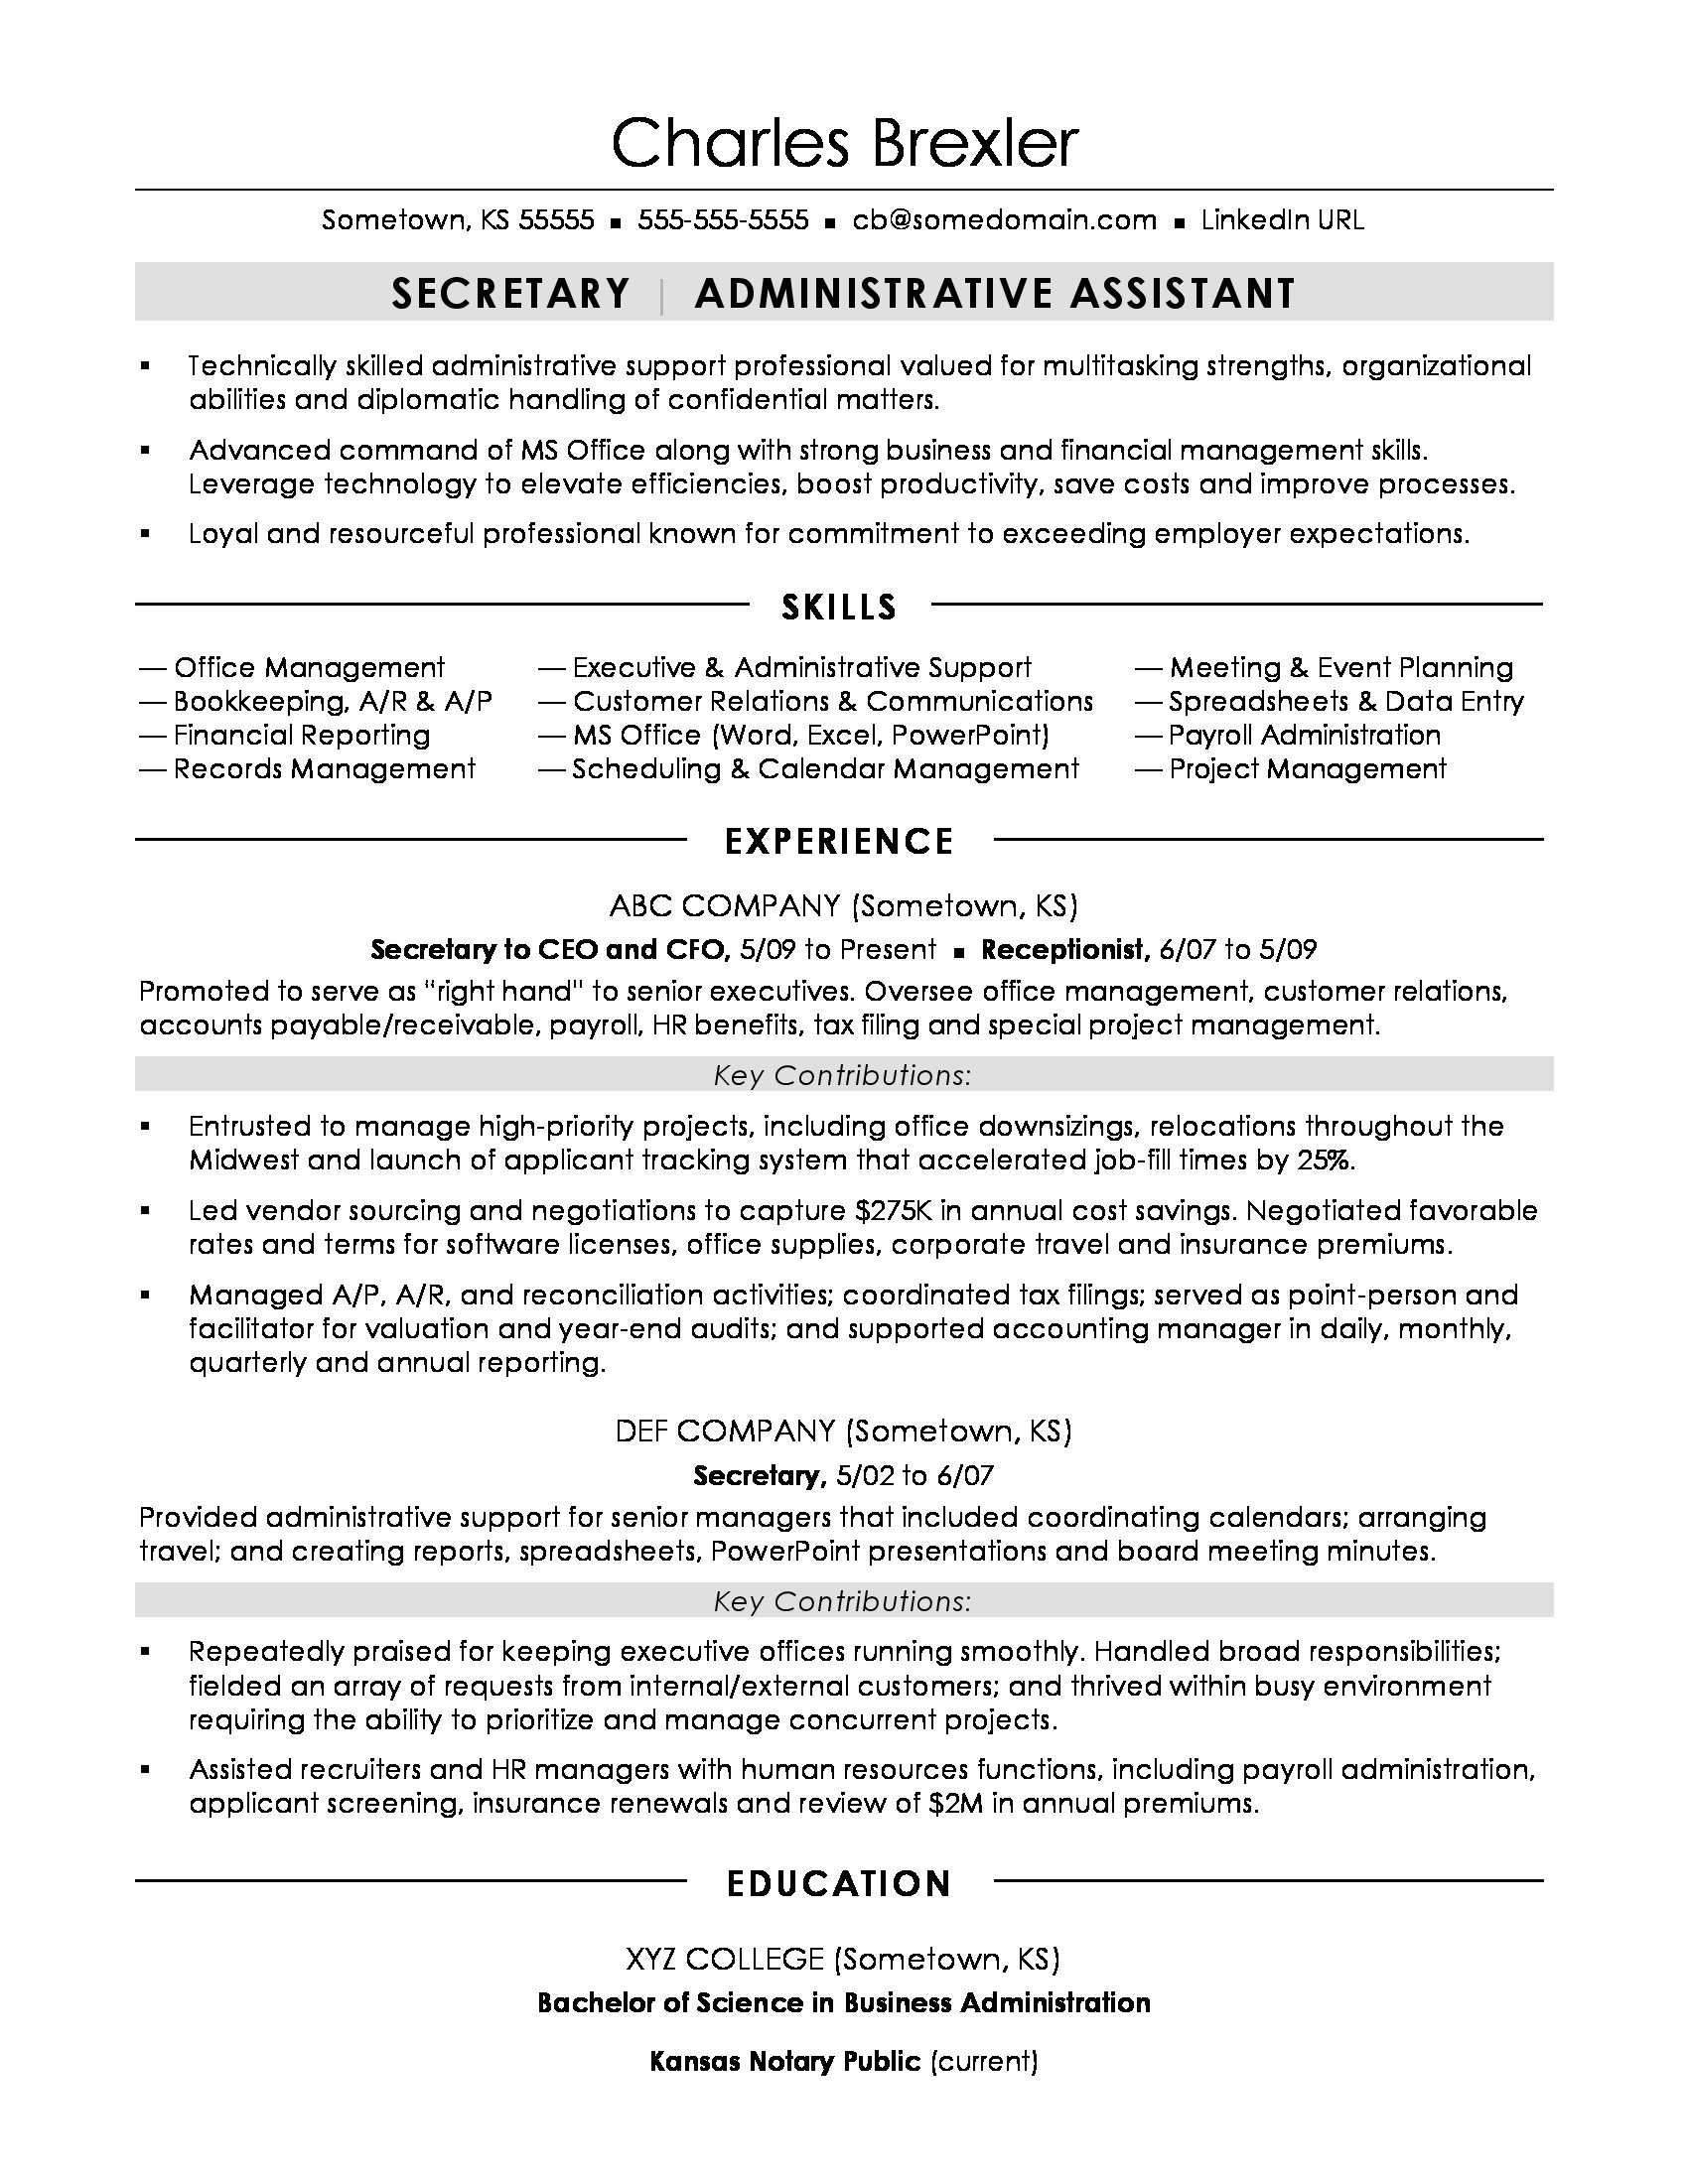 Sample Resume for Secretary In Corporate Business Secretary Resume Sample Monster.com